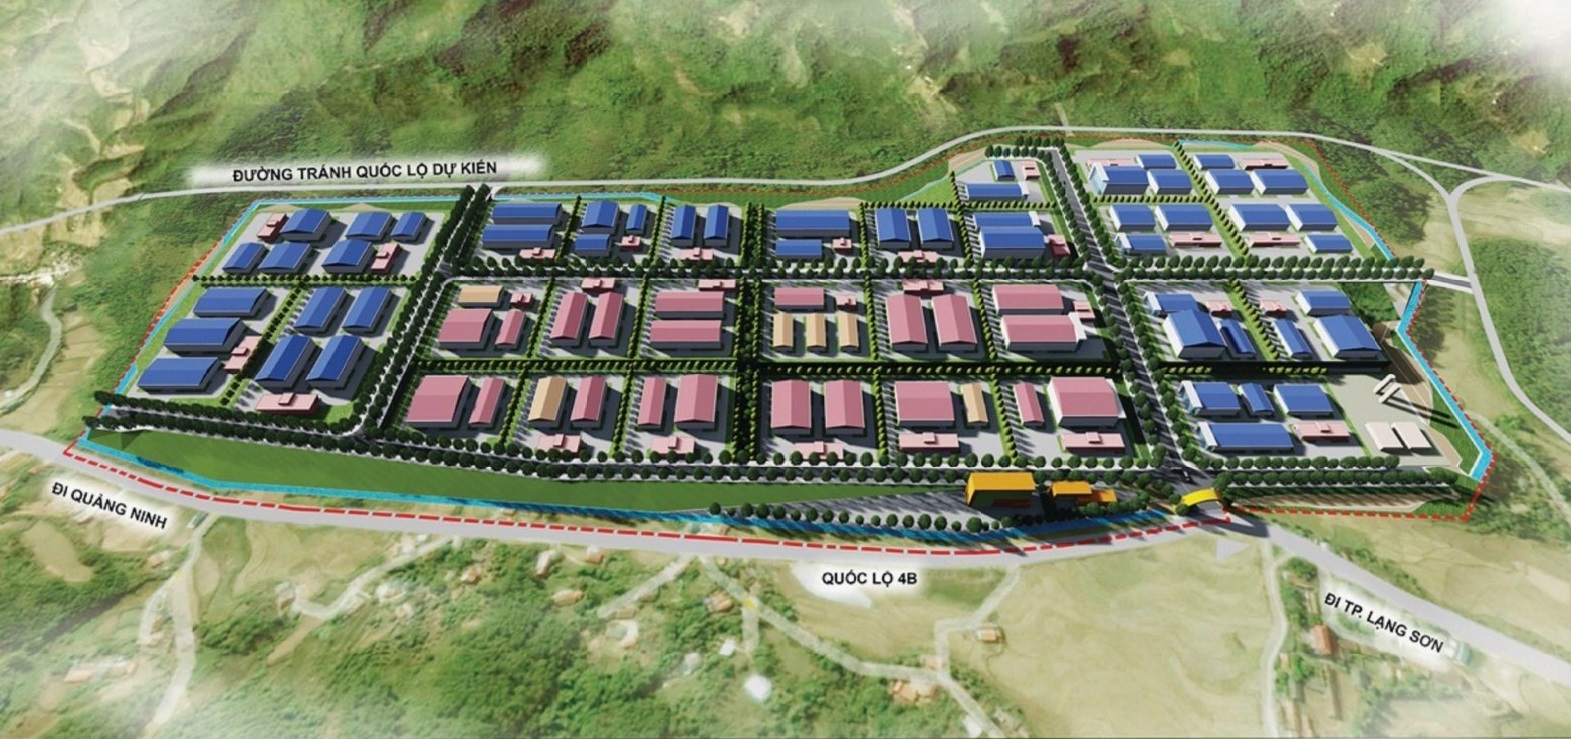 Công ty thành viên trong mô hình Phục Hưng Holdings được Uỷ ban Nhân dân tỉnh Lạng Sơn chấp thuận chủ trương đầu tư Dự án Cụm công nghiệp Đình Lập tại Lạng Sơn với tổng vốn đầu tư gần 700 tỷ đồng